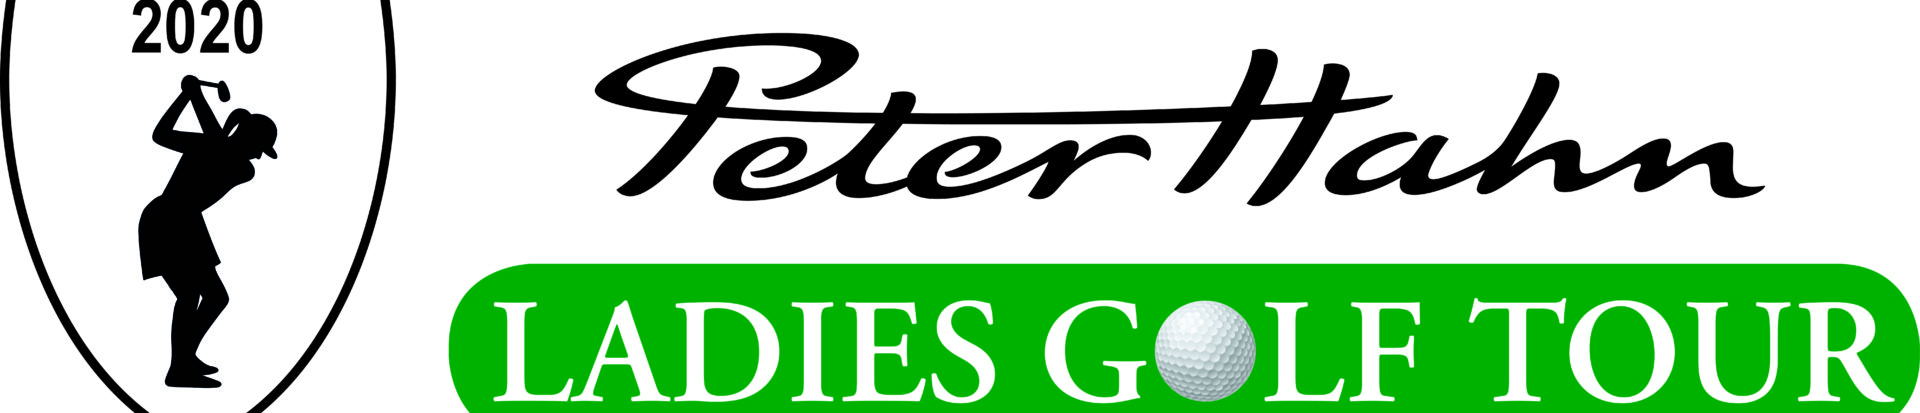 Peter Hahn Ladies Tour 2020 Logo